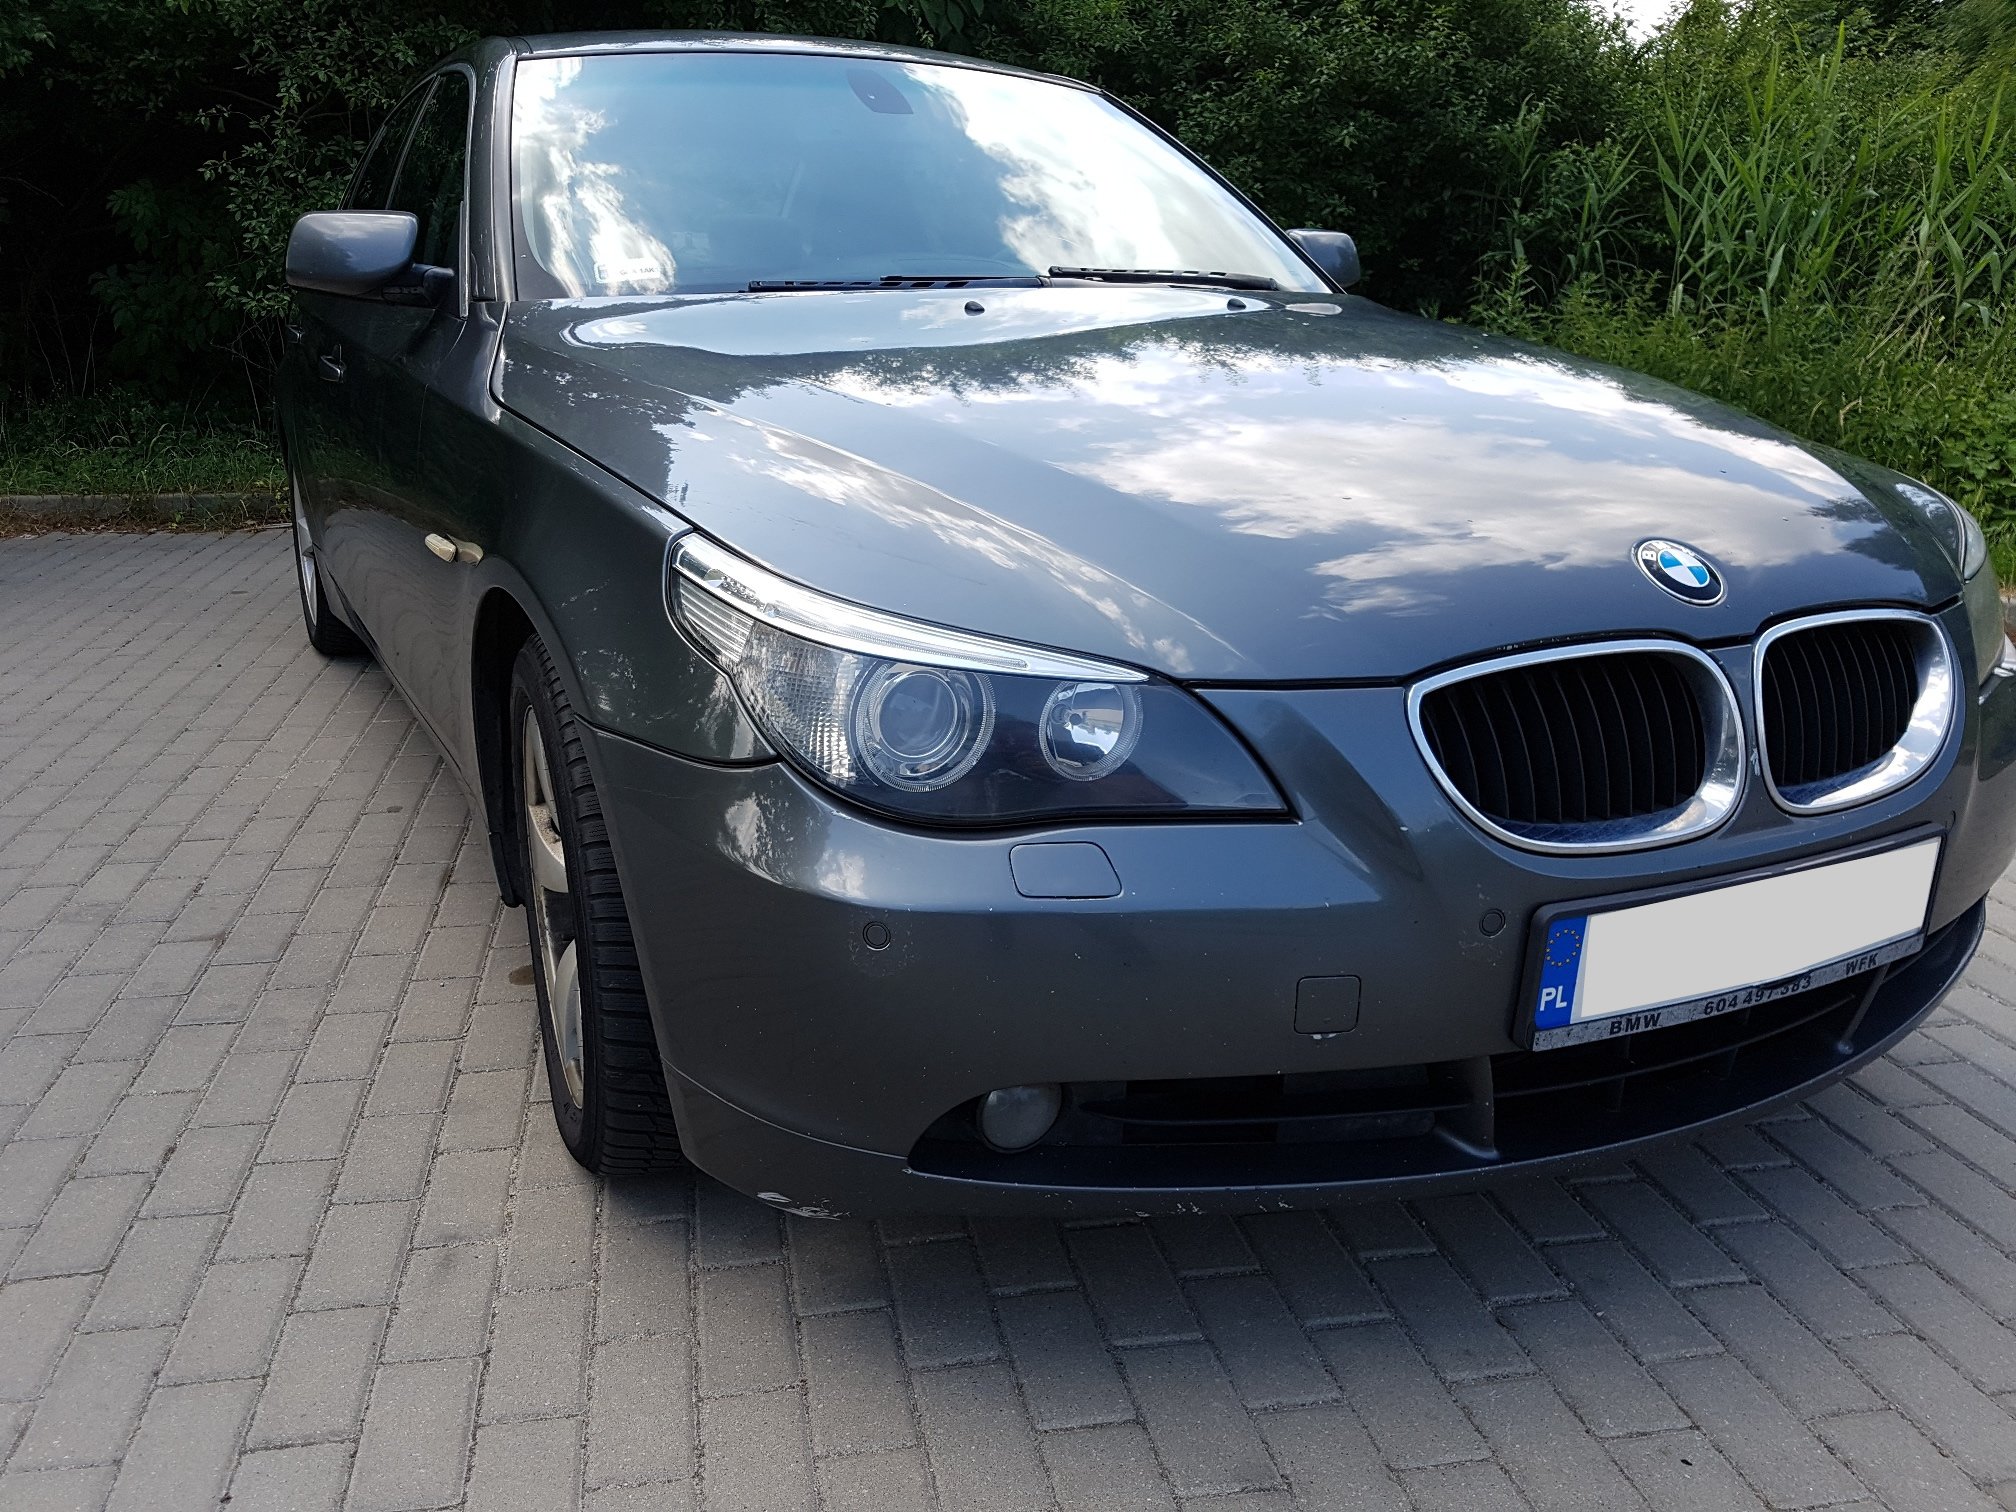 BMW e60 530d, 2006 rok, 3,0 diesel, automat 7416125899